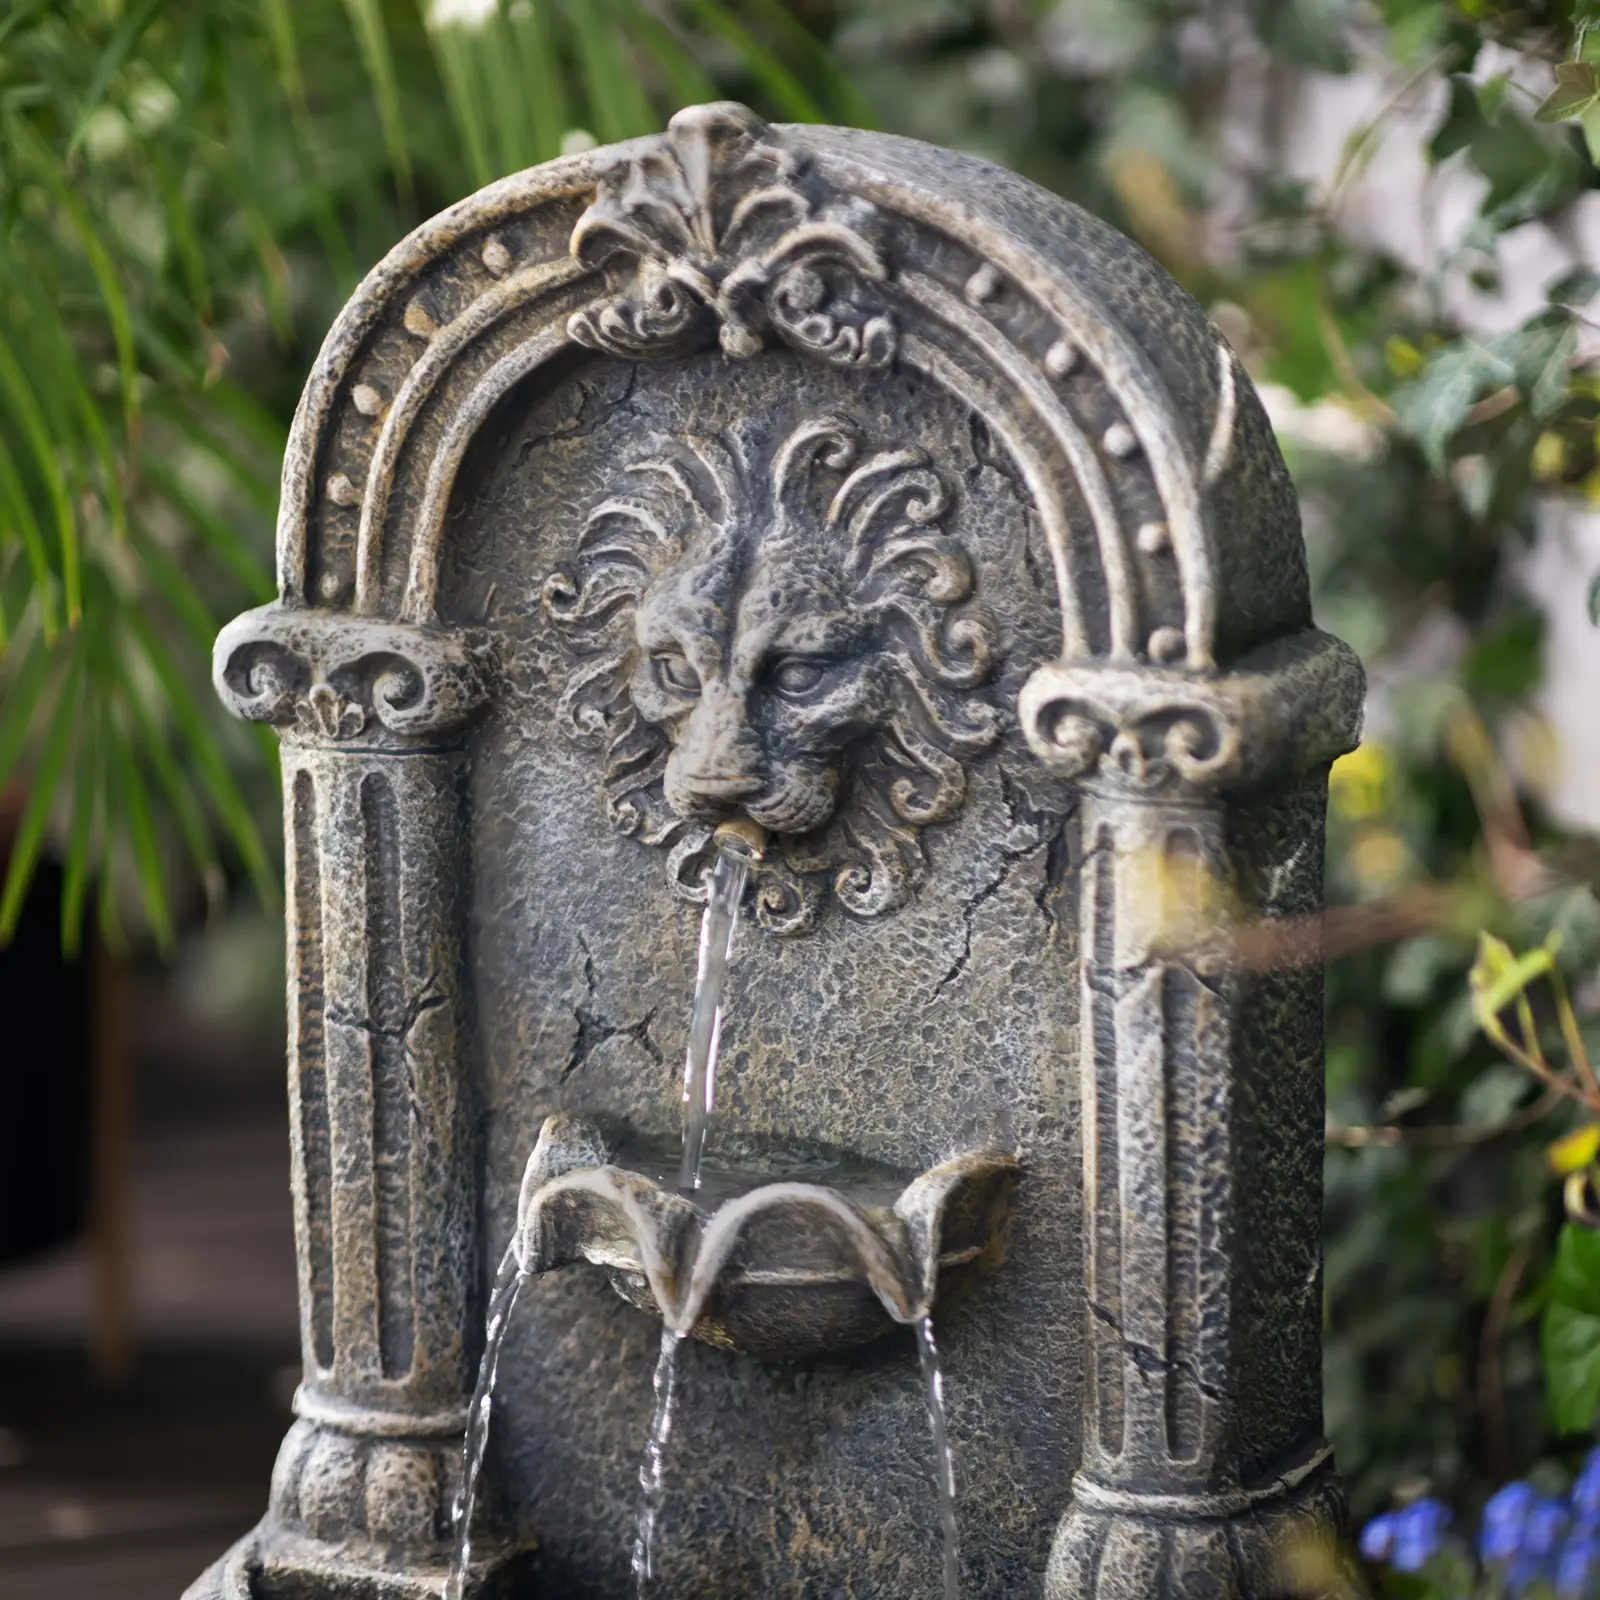 Fontana solare da giardino - Testa di leone su vasca decorata - Illuminazione a LED